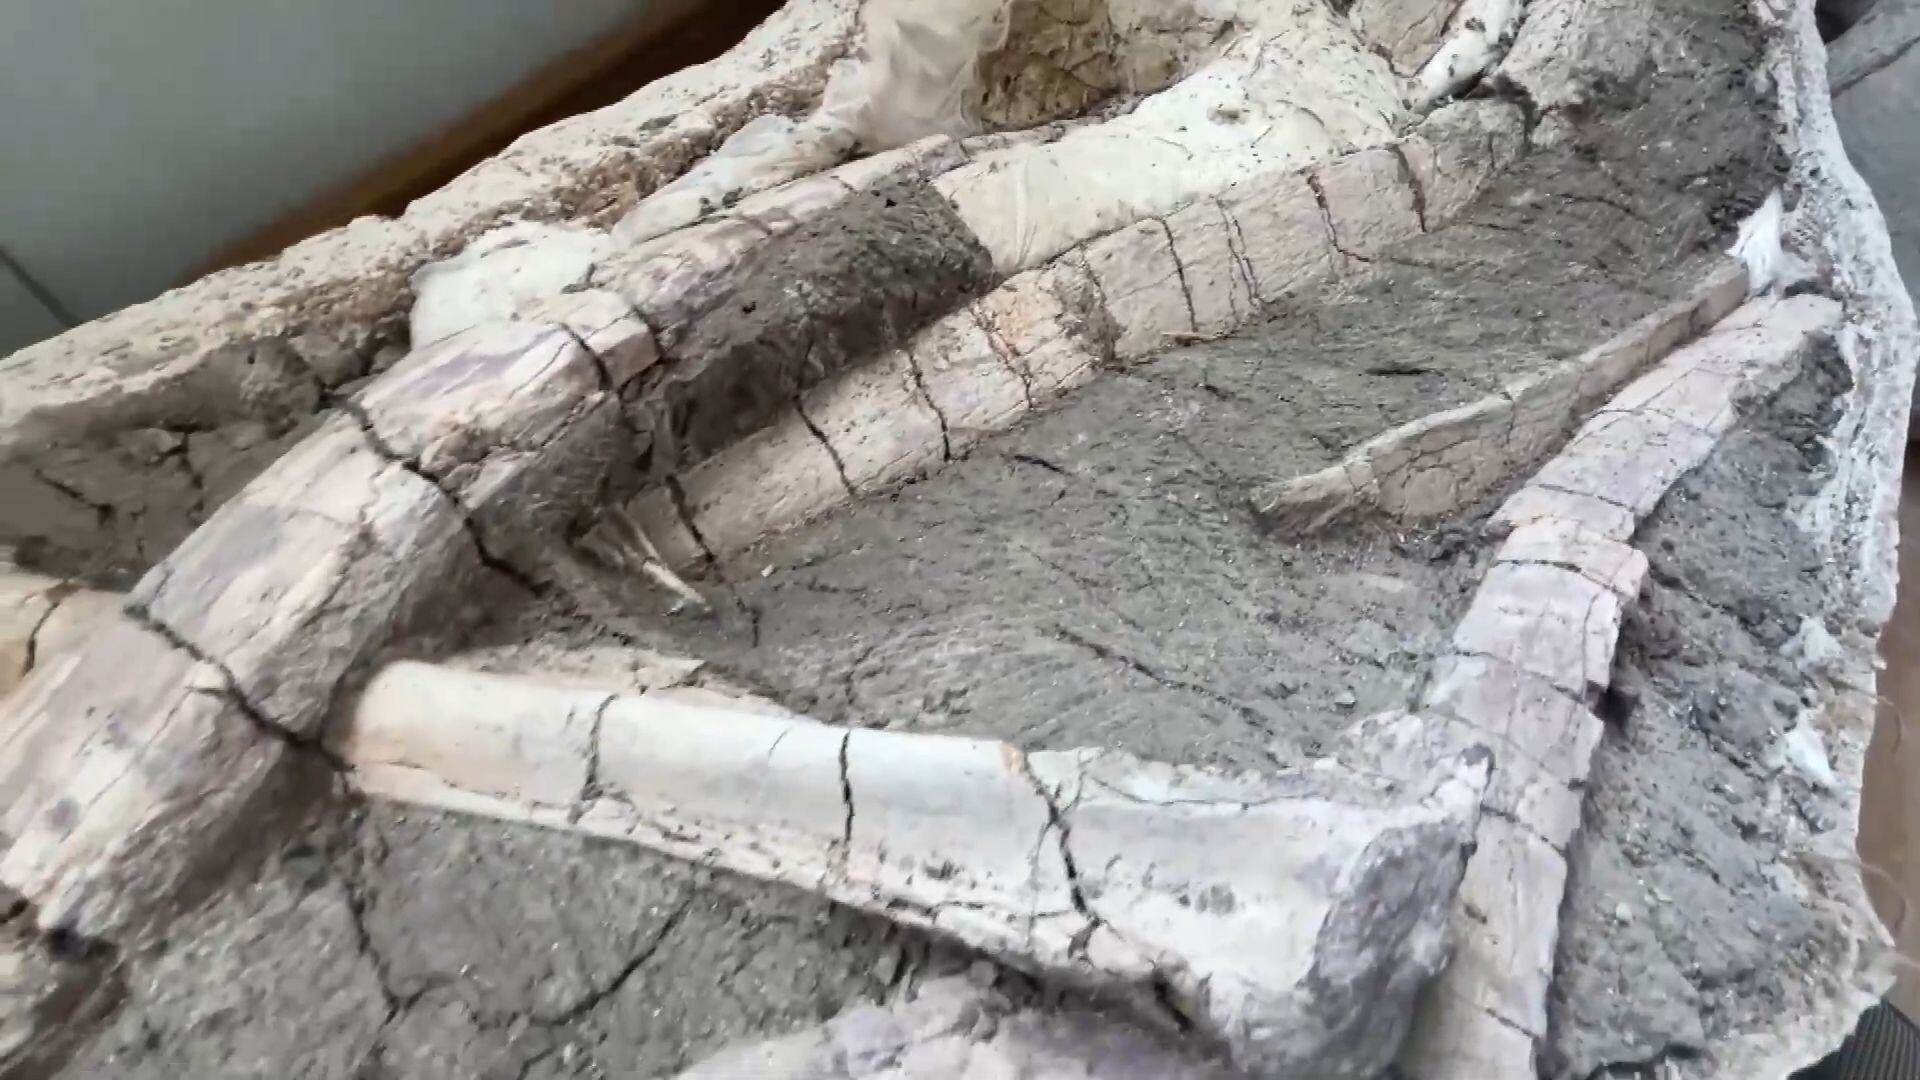 จี๋หลินขุดพบ 'ฟอสซิลไดโนเสาร์' กว่า 20 ชิ้น ในเดือนเดียว